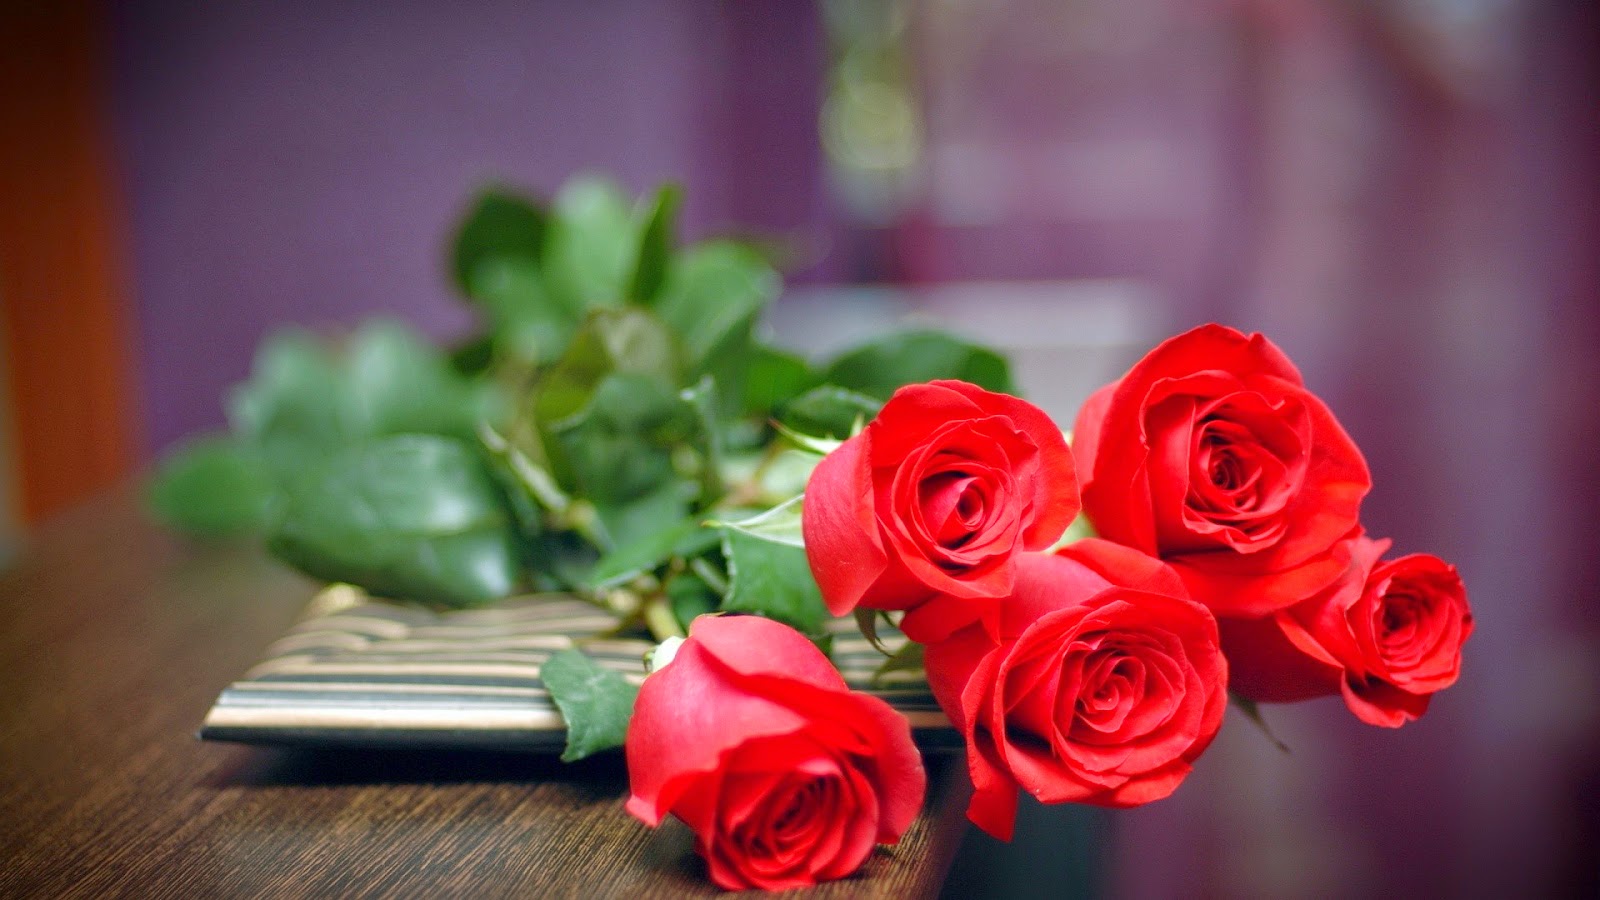 Bí mật từ những bông hoa hồng trong tình yêu